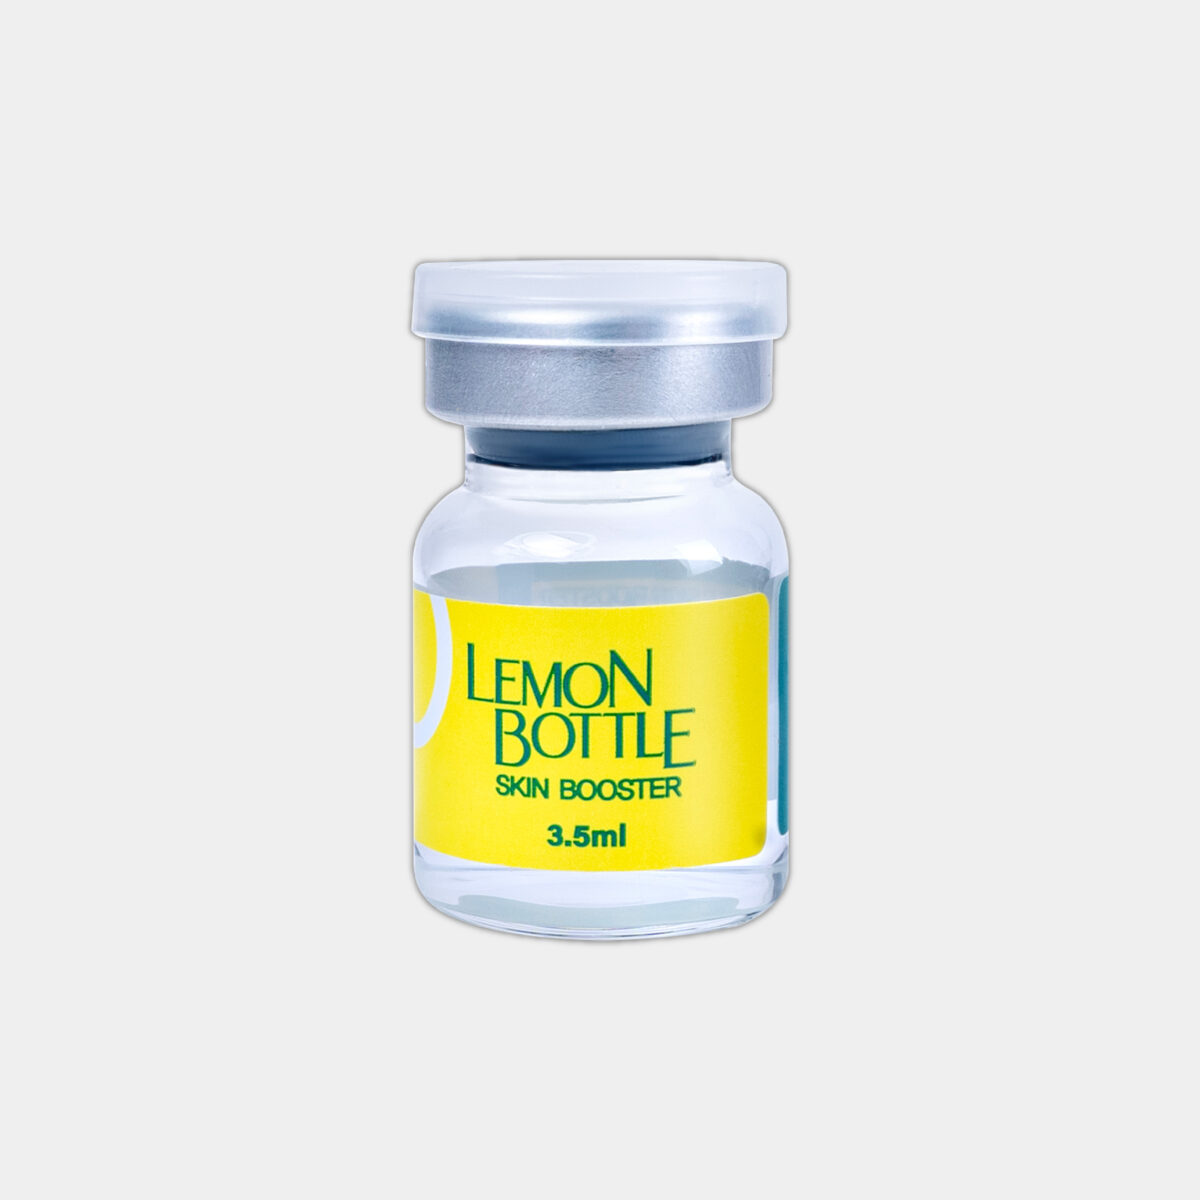 Lemon Bottle Skin Booster - SINGLE